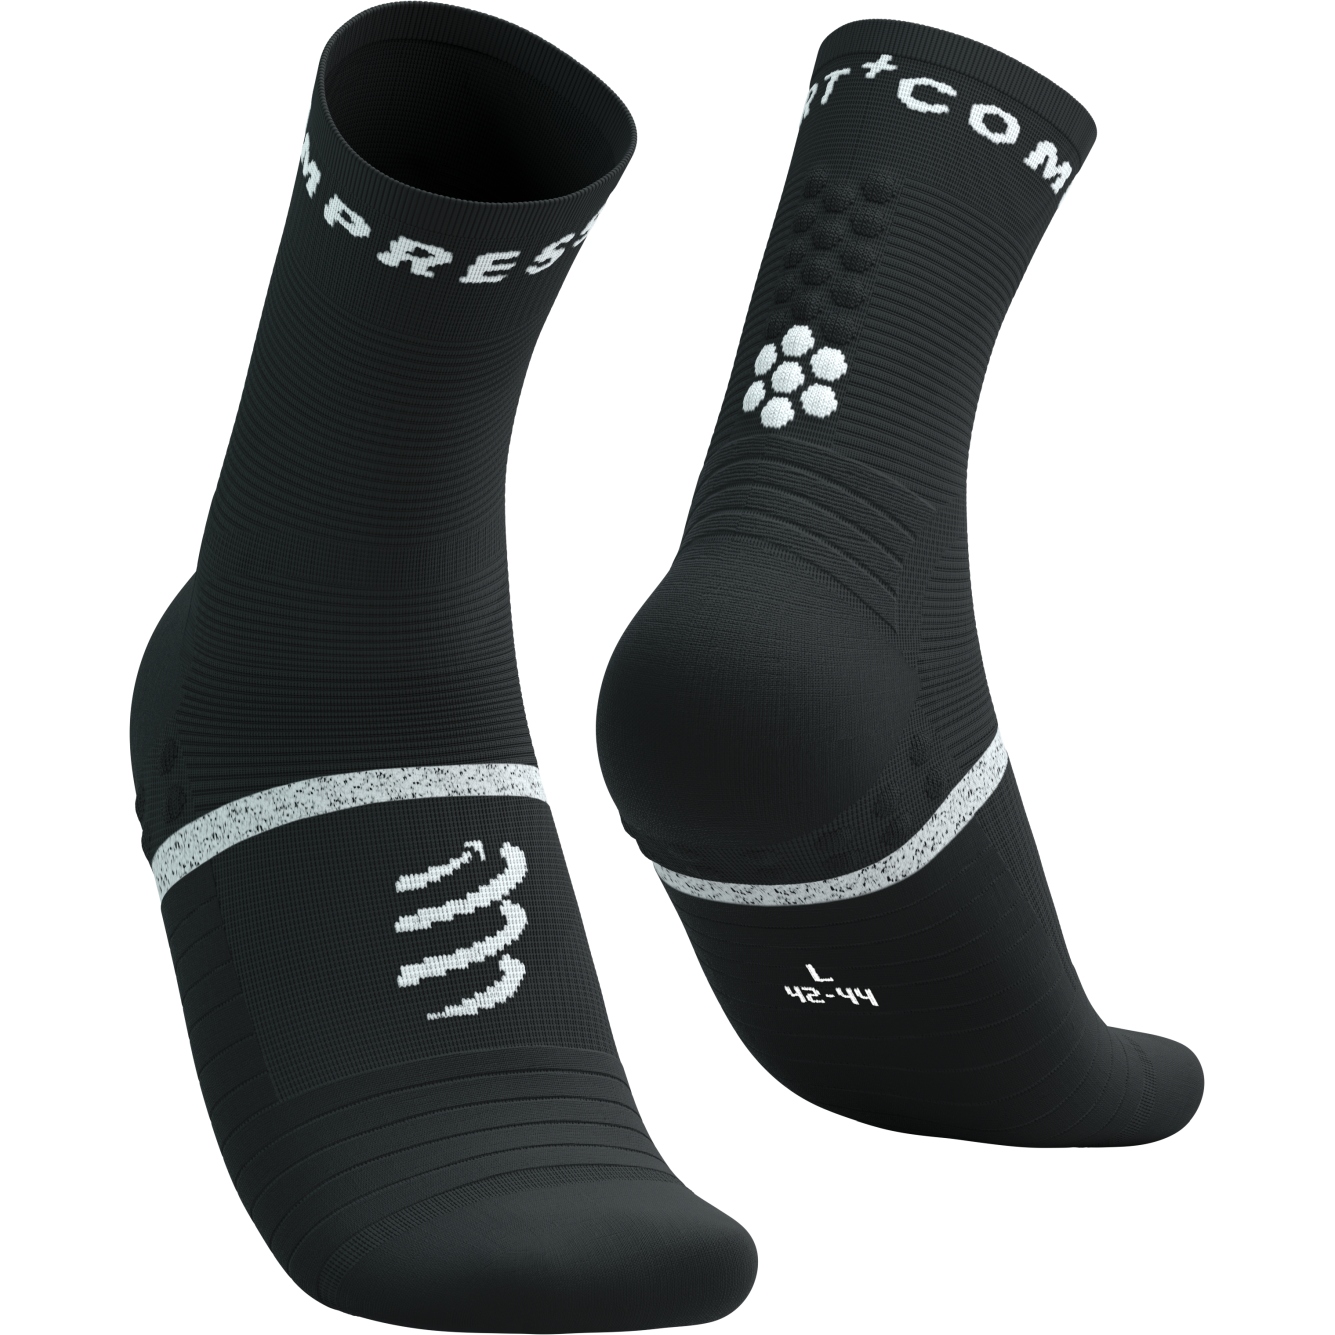 Produktbild von Compressport Pro Marathon Socken v2.0 - schwarz/weiß